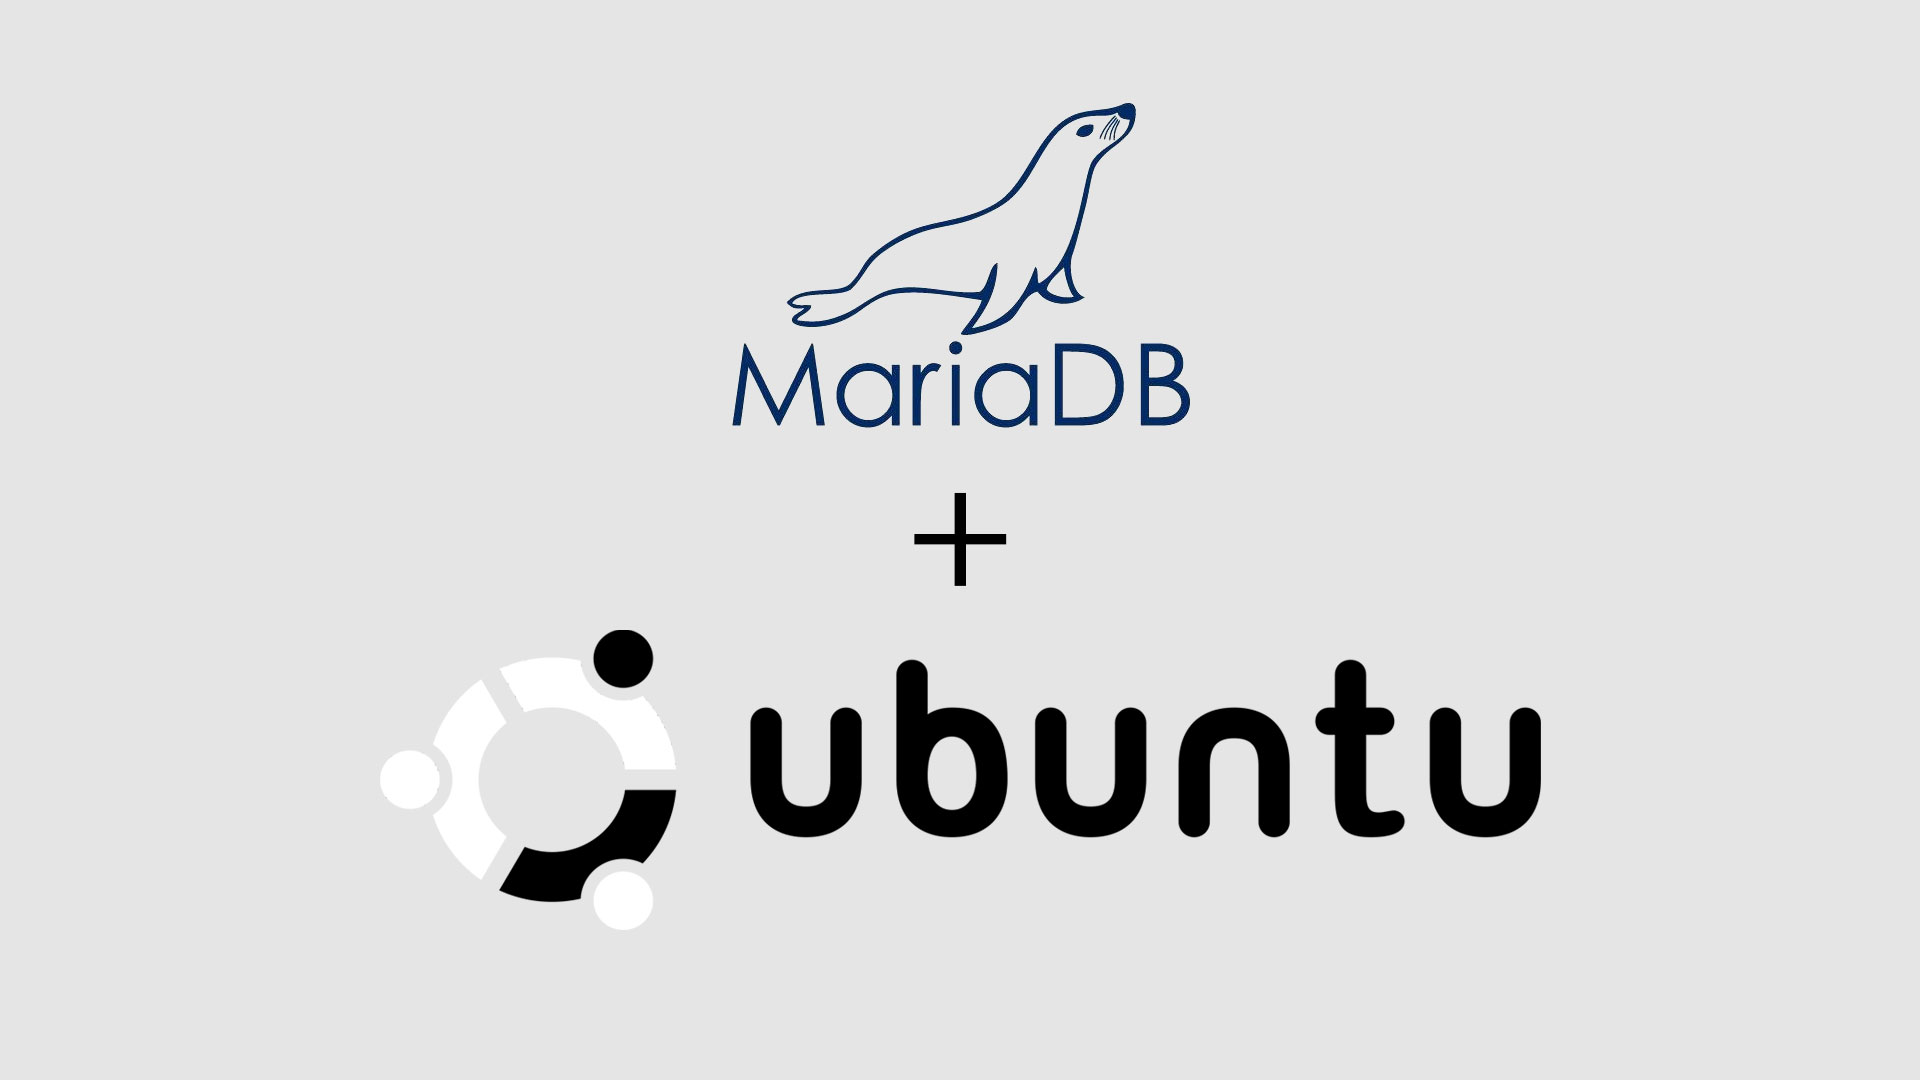 How To Install MariaDB on Ubuntu Focal Fossa